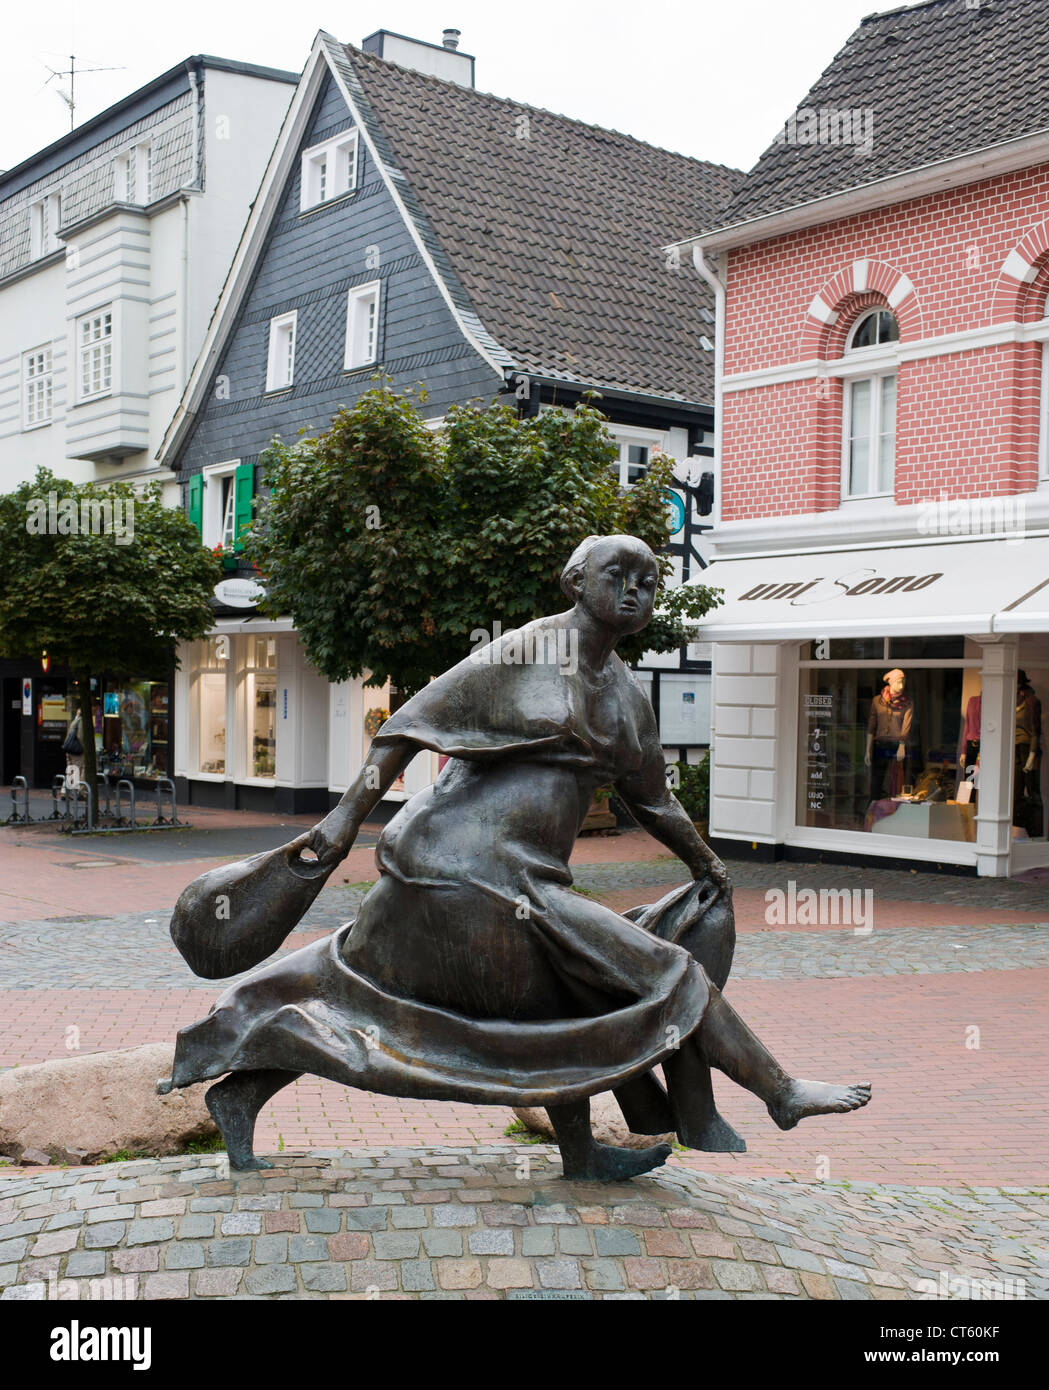 Einkäuferin Eilige par Karl Henning Seemann statue en bronze à Hilden, Rhénanie du Nord-Westphalie Allemagne trans femme acheteur hâtives Banque D'Images